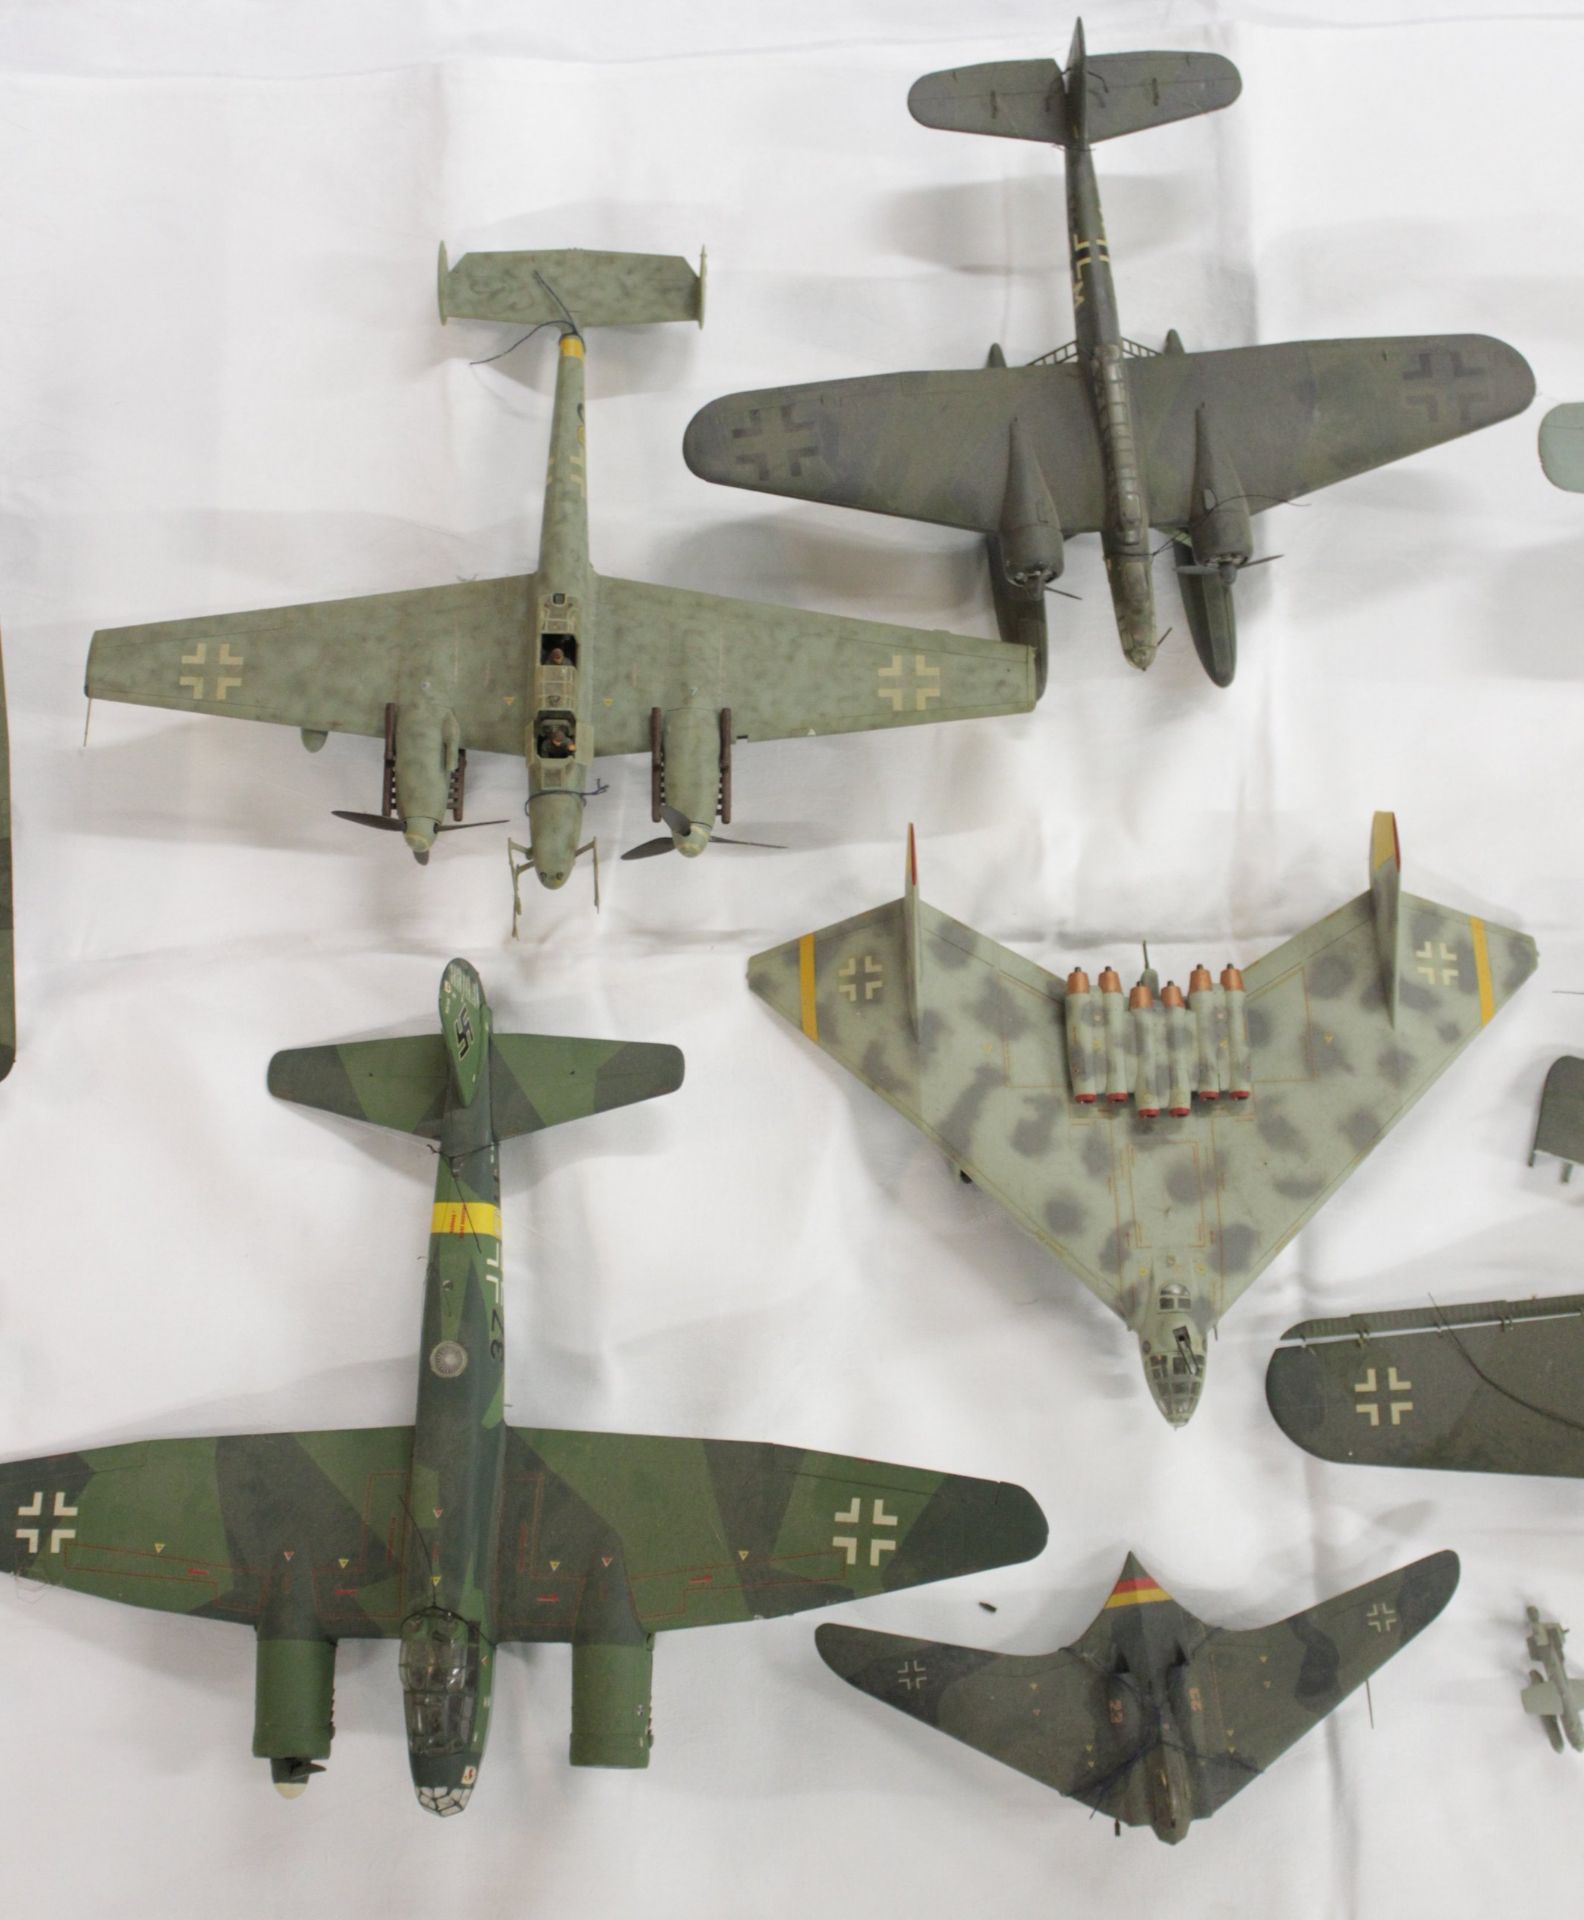 Konvolut div. Modell-Flugzeuge, meist mit Beschädigung (Teile lose, abgebrochen etc.), Vollständigk - Image 10 of 15